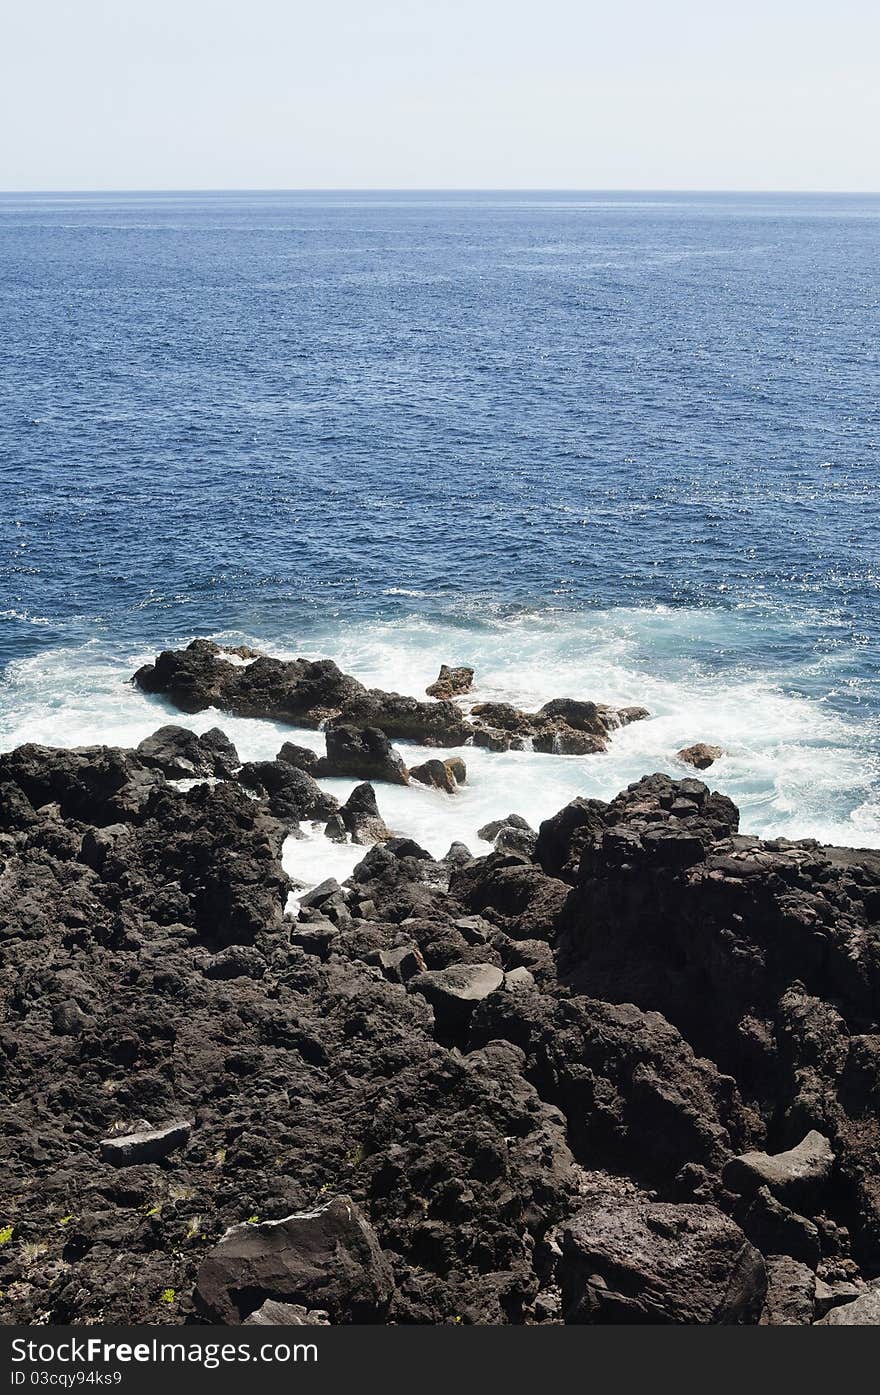 Volcanic rock in Pico island costline, Azores